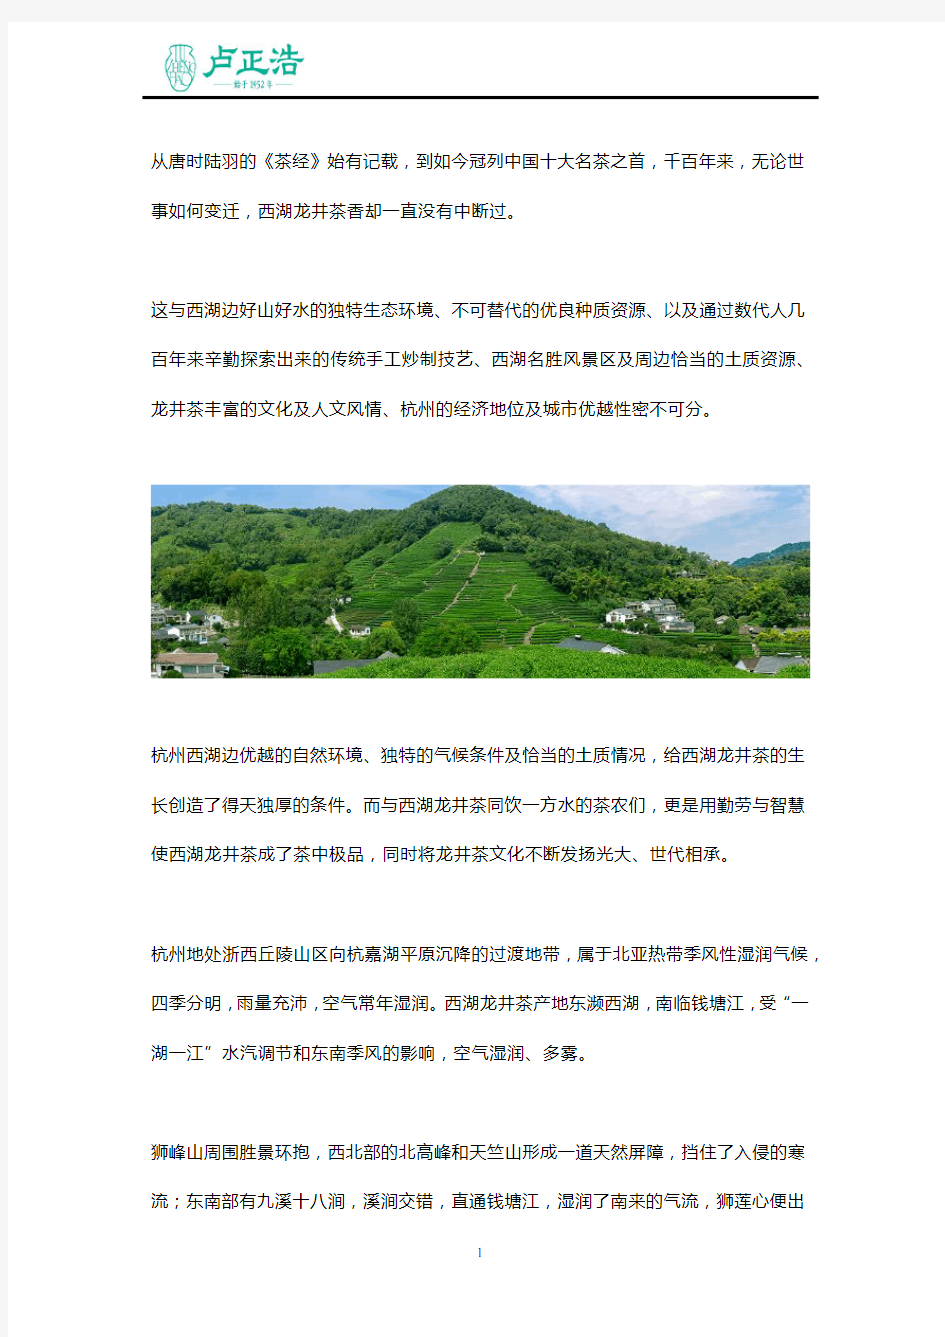 杭城的独特山水铸就了西湖龙井